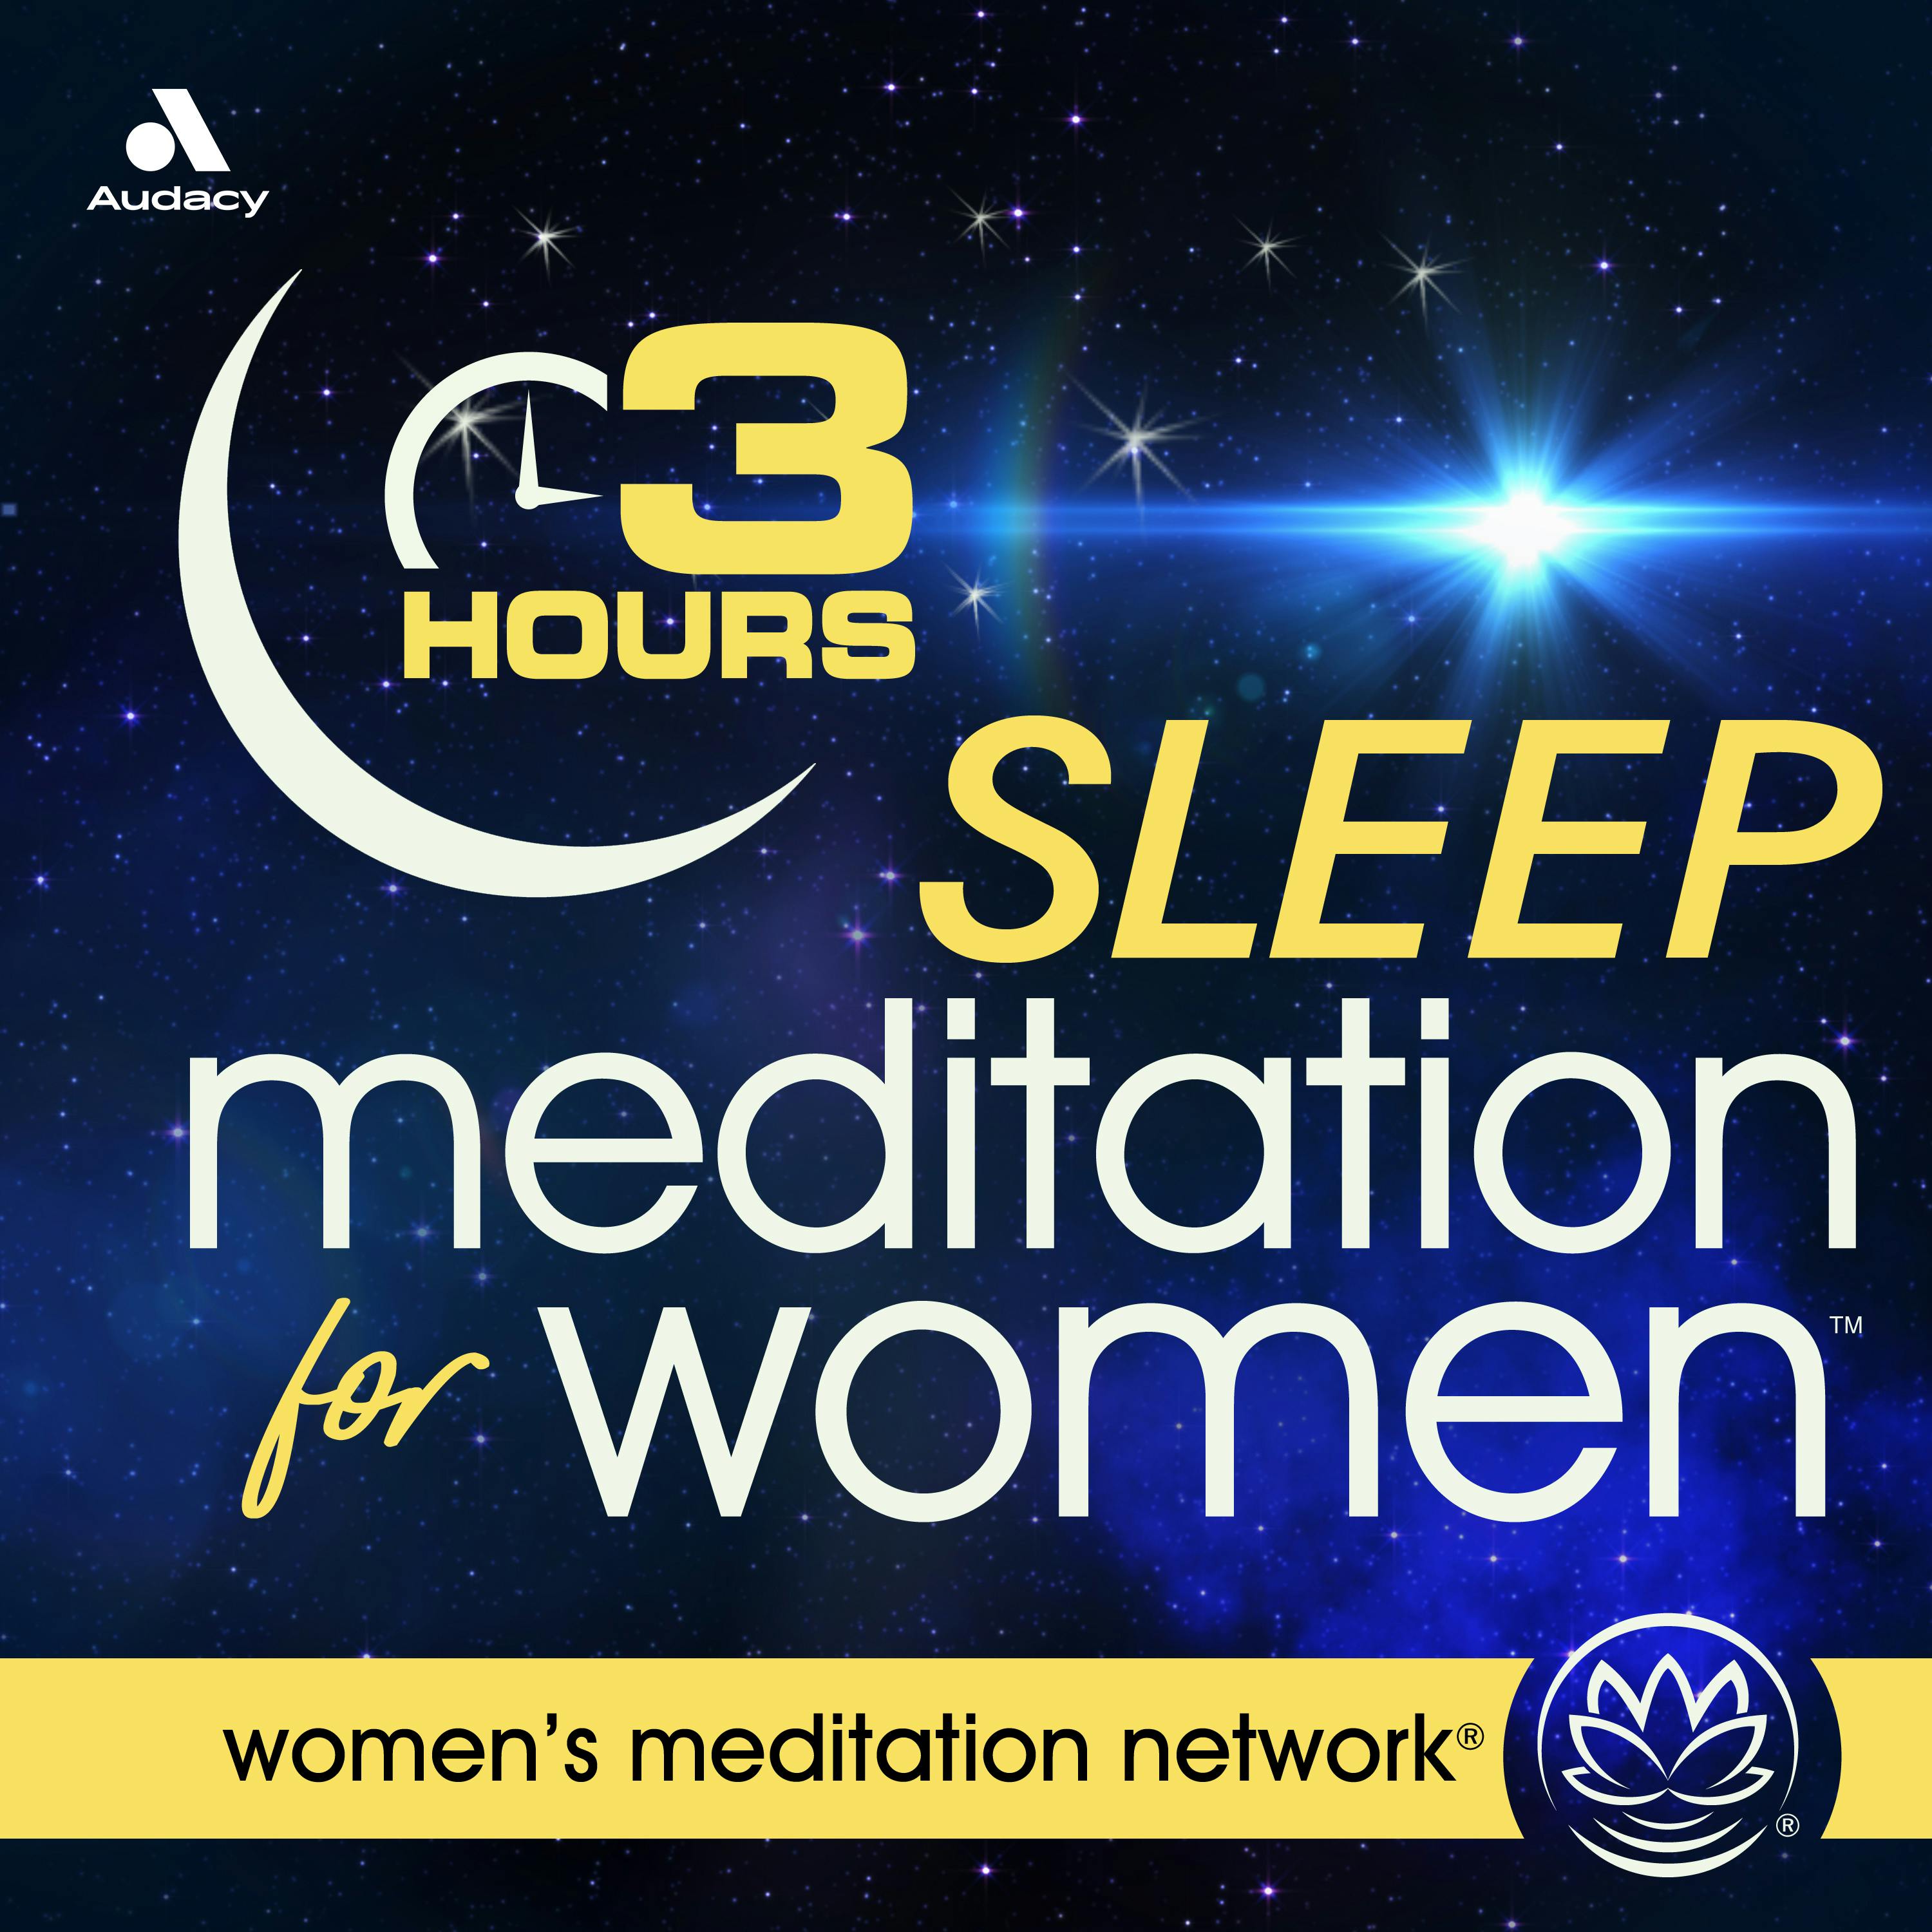 Sleep Meditation for Women 3 HOURS podcast tile